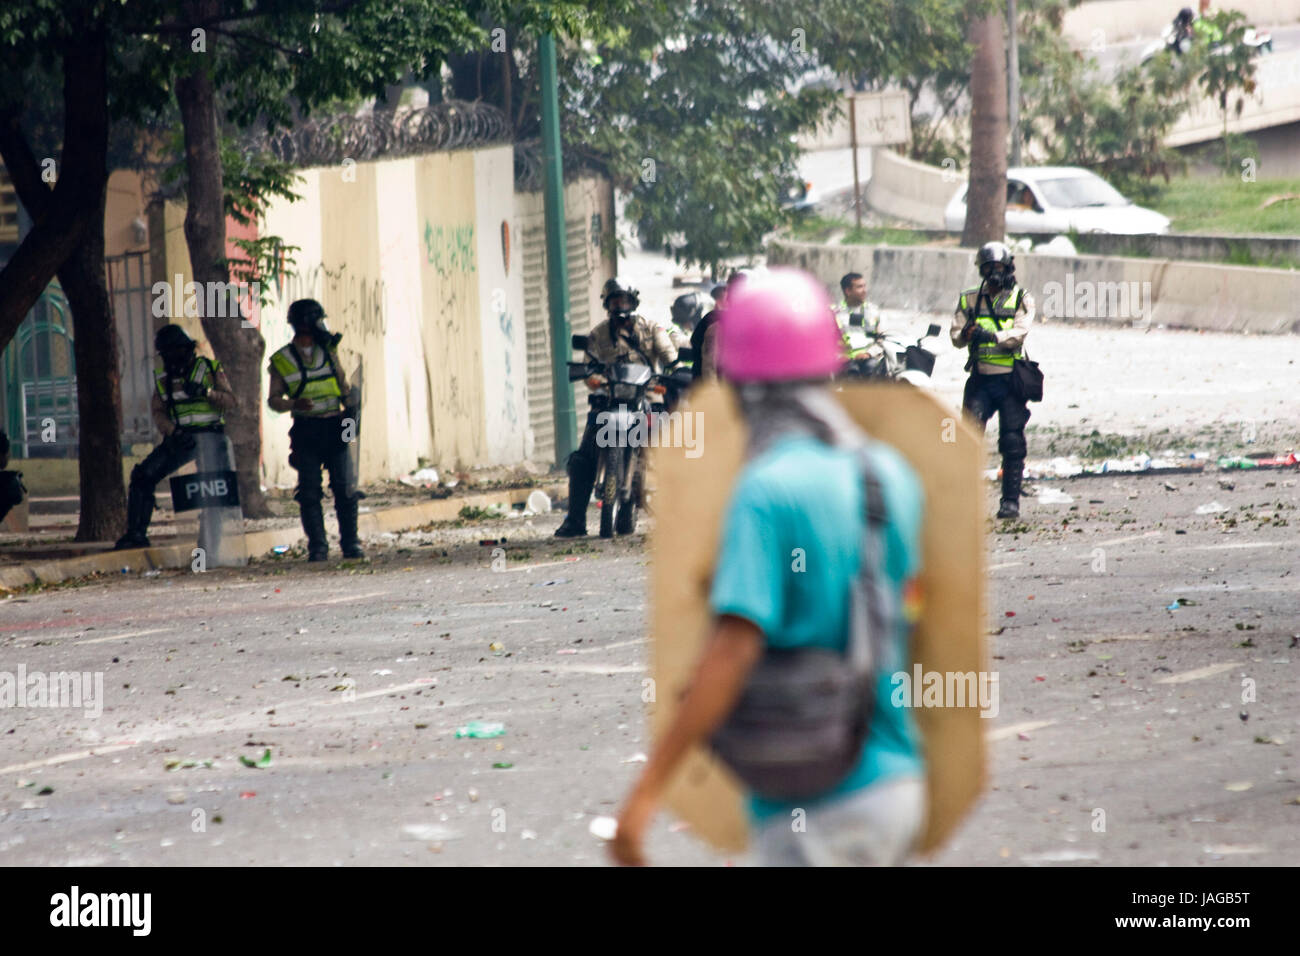 Ein Demonstrator konfrontieren die Bolivarianische nationalen Polizei während eines Protestes gegen die Regierung von Nicolas Maduro. Stockfoto